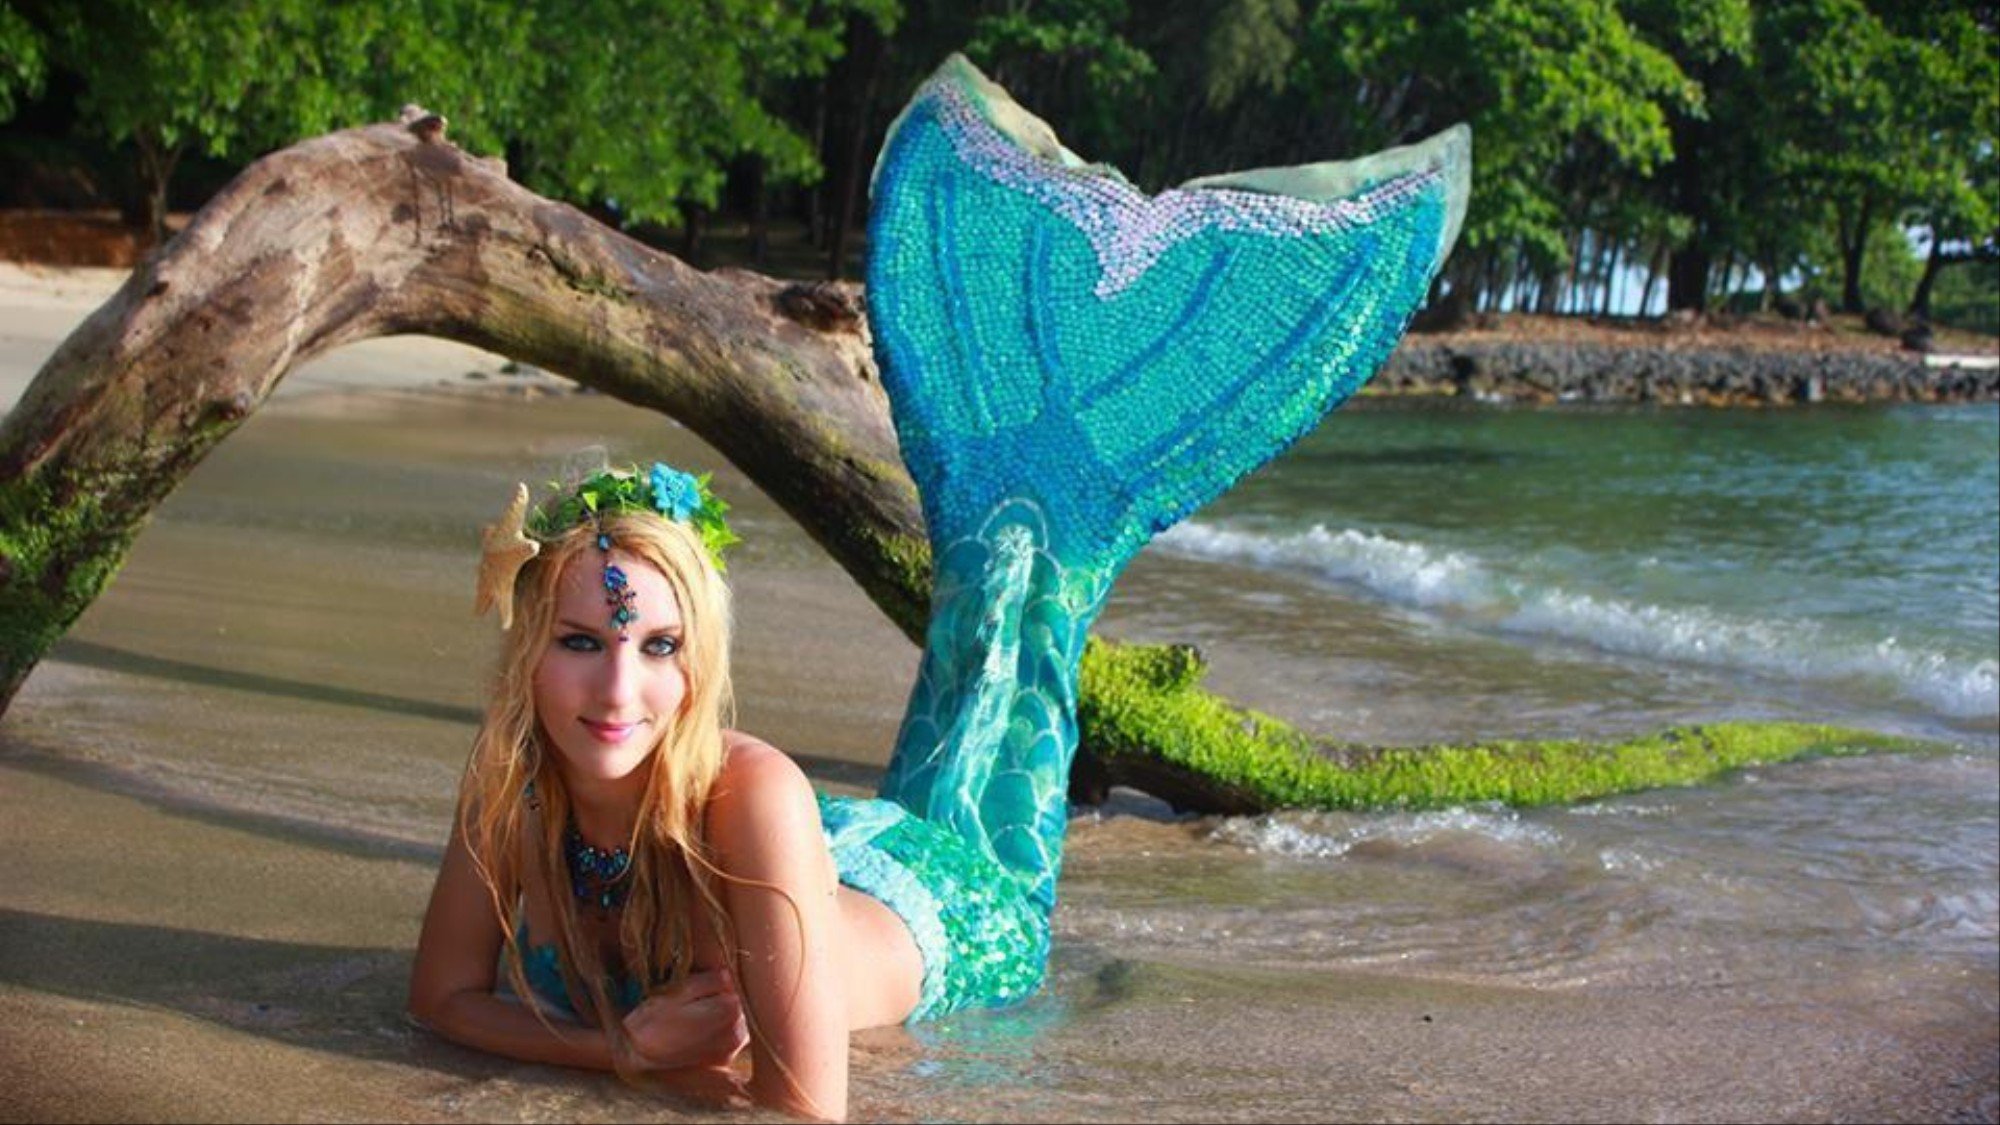 Mr. P. reccomend weekie wschee vintage film mermaid